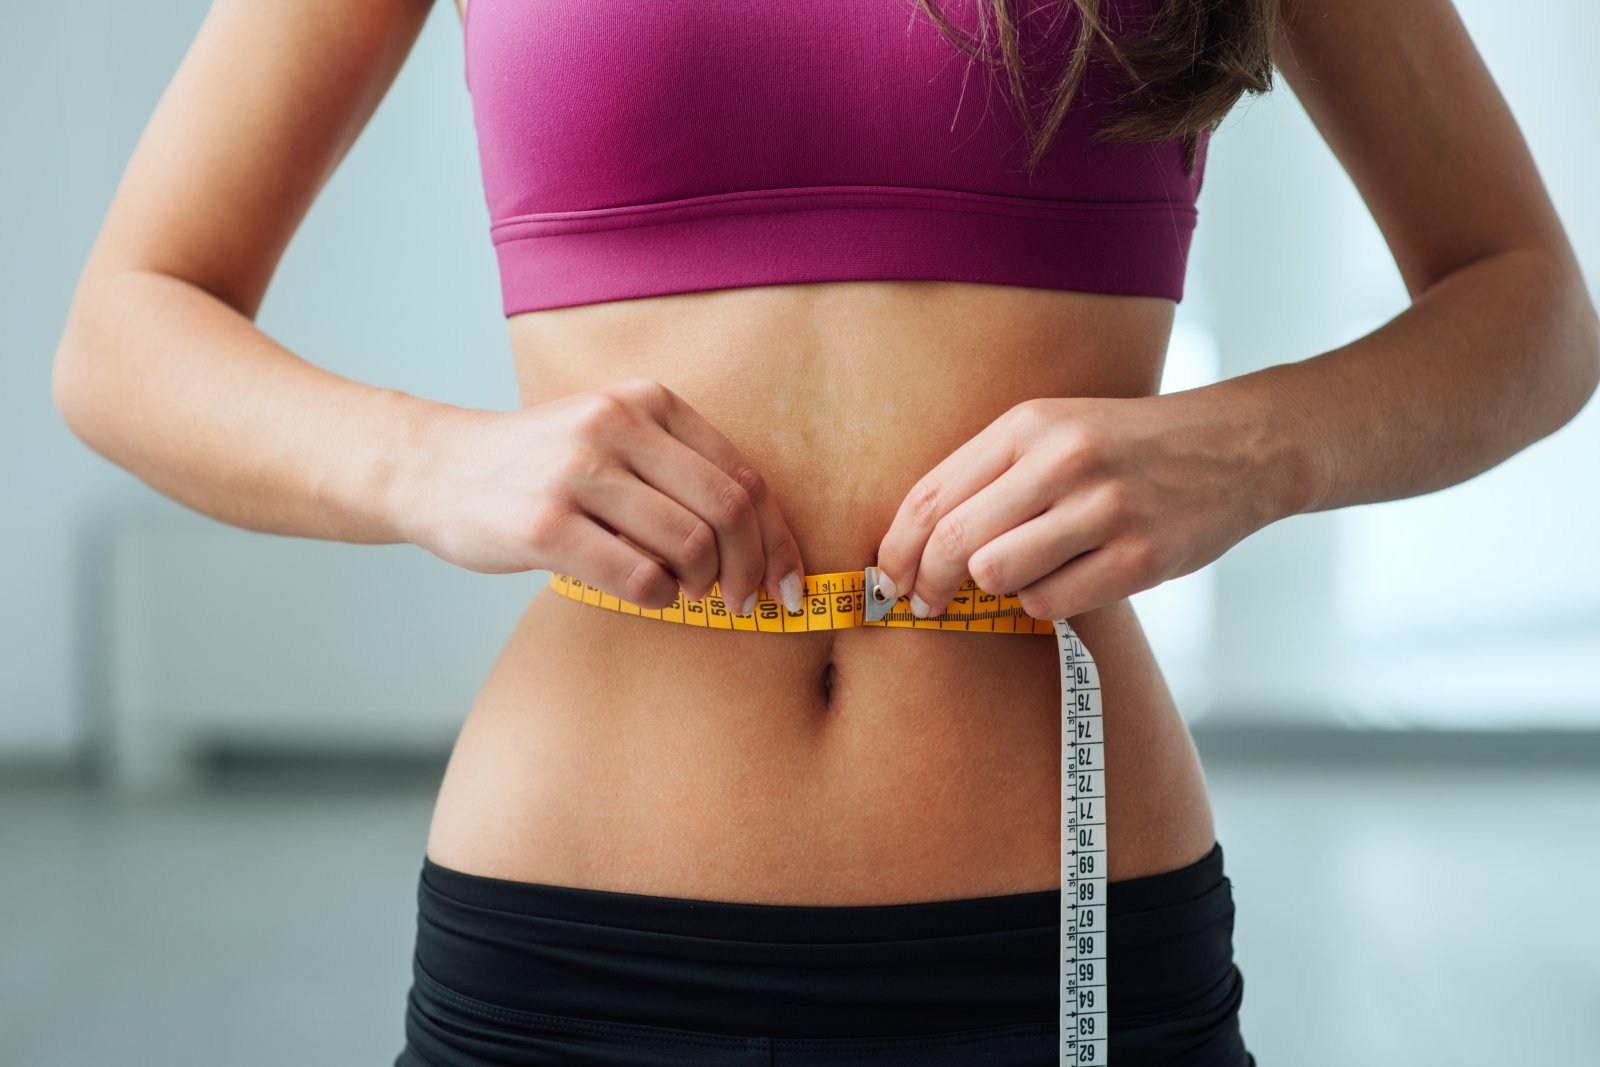 ar celiakija sukelia svorio padidėjimą ar sumažėjimą ar osteoartritas gali sumažinti svorį